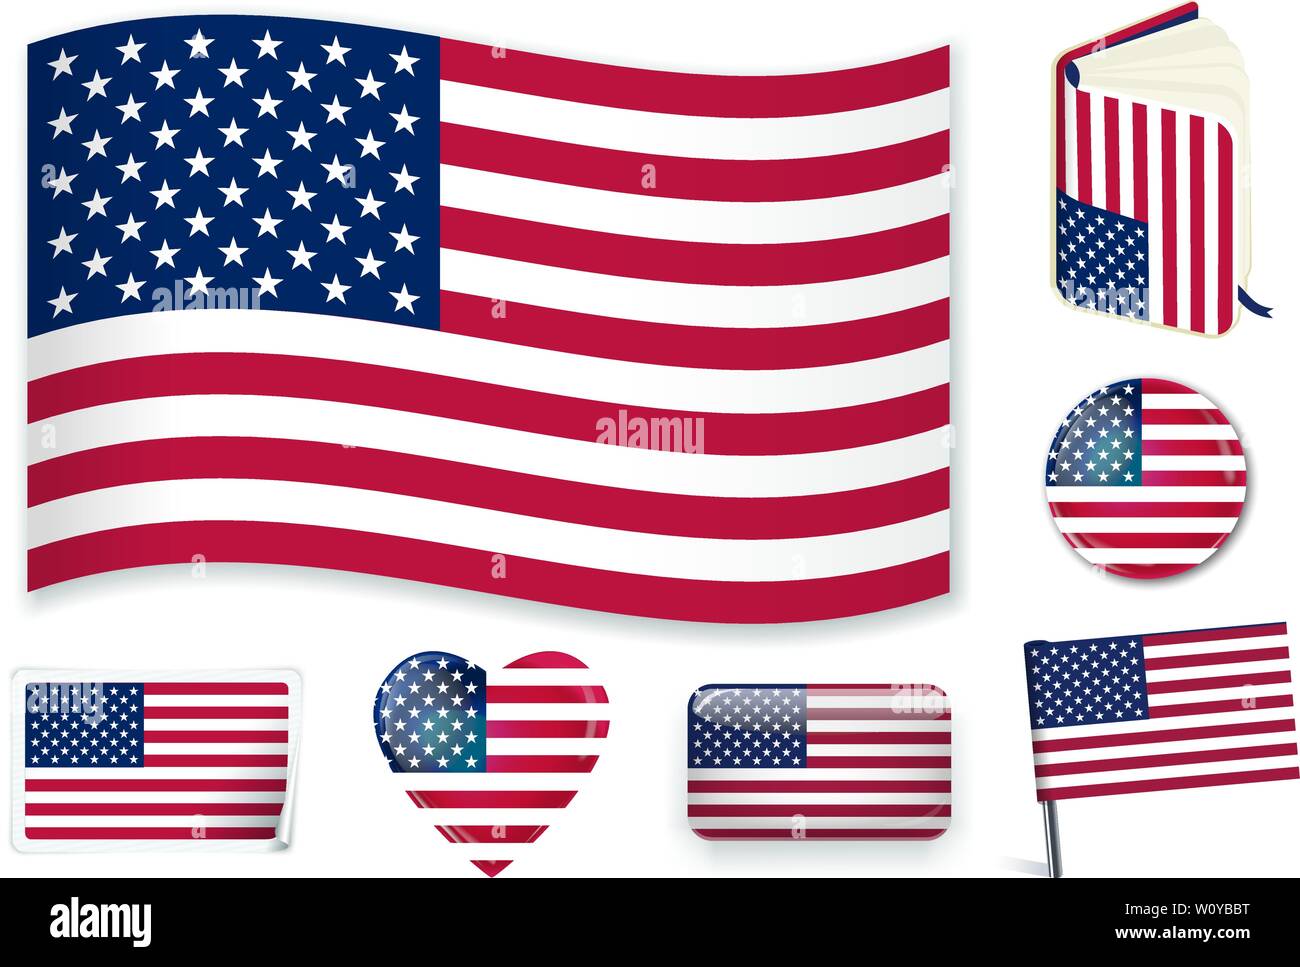 USA Nationalflagge. Vector Illustration. 3 Schichten. Schatten, Flachbild Flagge sie diese separat verwenden können, Aufkleber. Sammlung von 220 Welt Flaggen. Präzise Farben. Einfache Änderungen. Stock Vektor